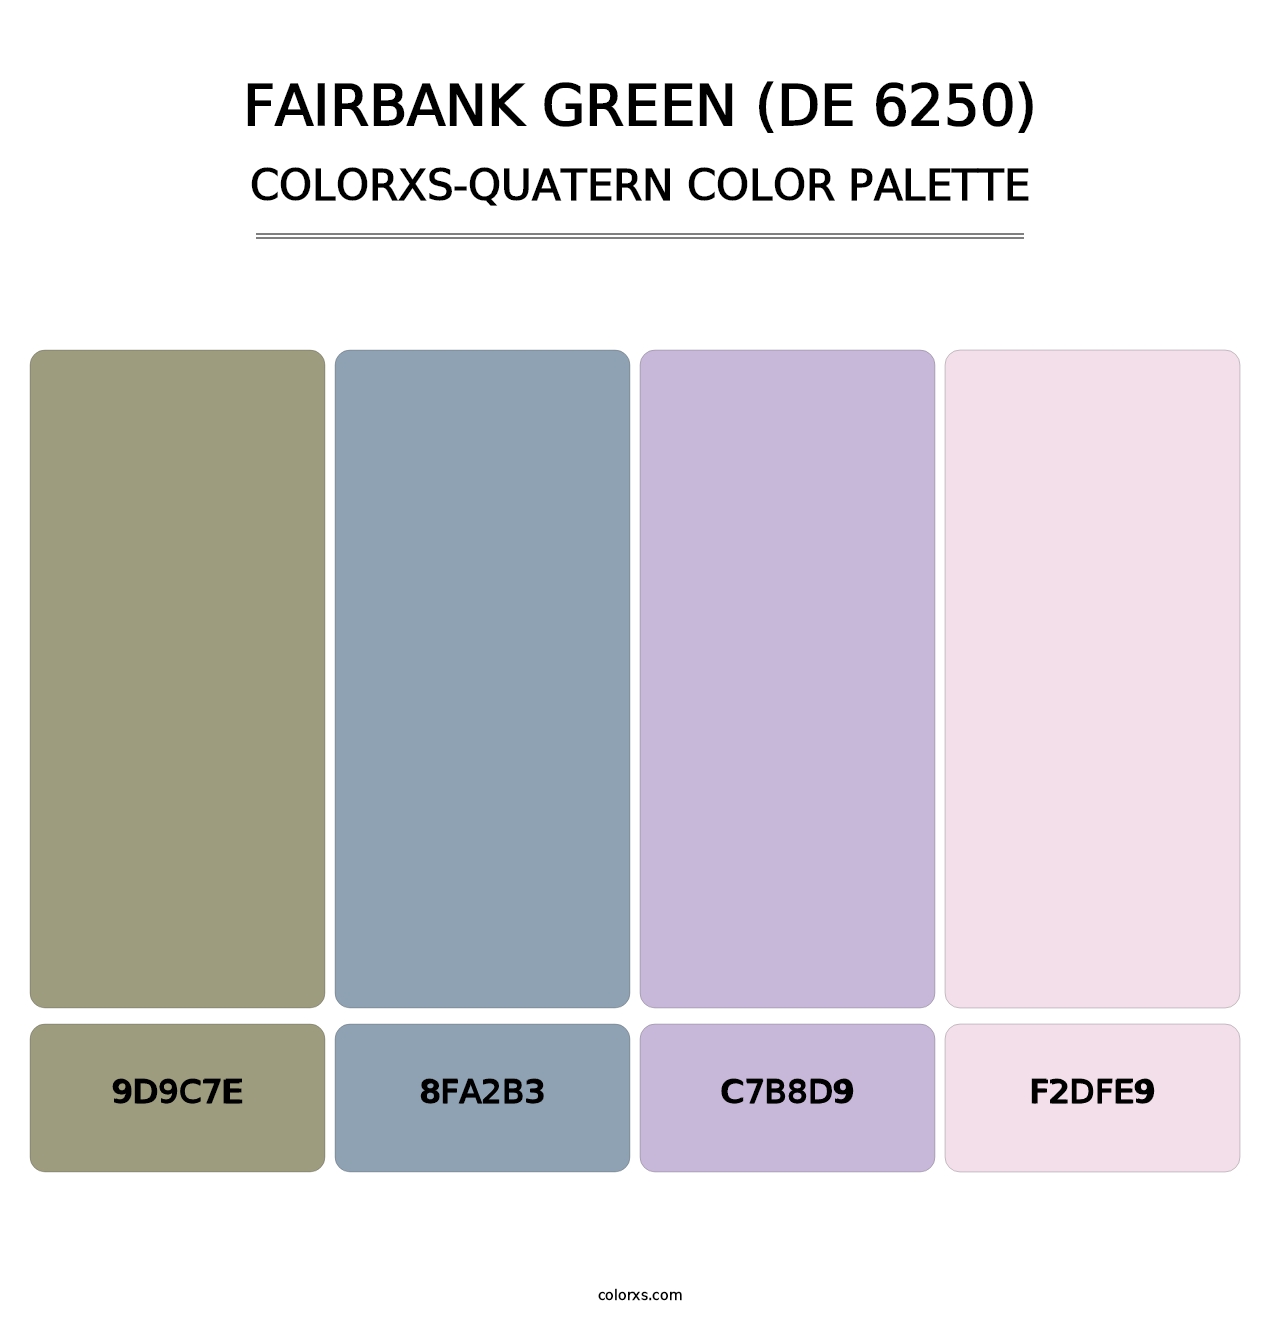 Fairbank Green (DE 6250) - Colorxs Quatern Palette